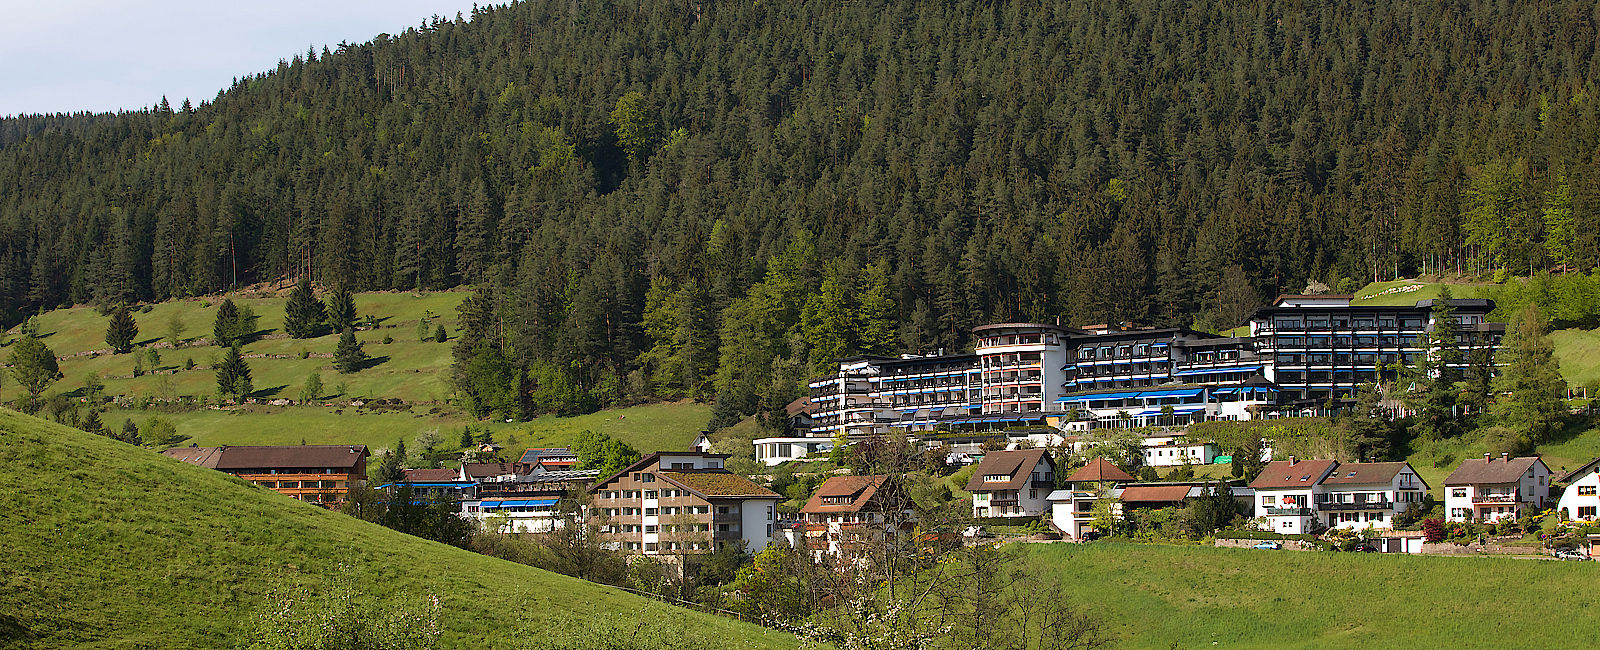 HOTEL TIPPS
 Hotel Traube Tonbach 
 Eines der anspruchsvollsten Häuser Europas 